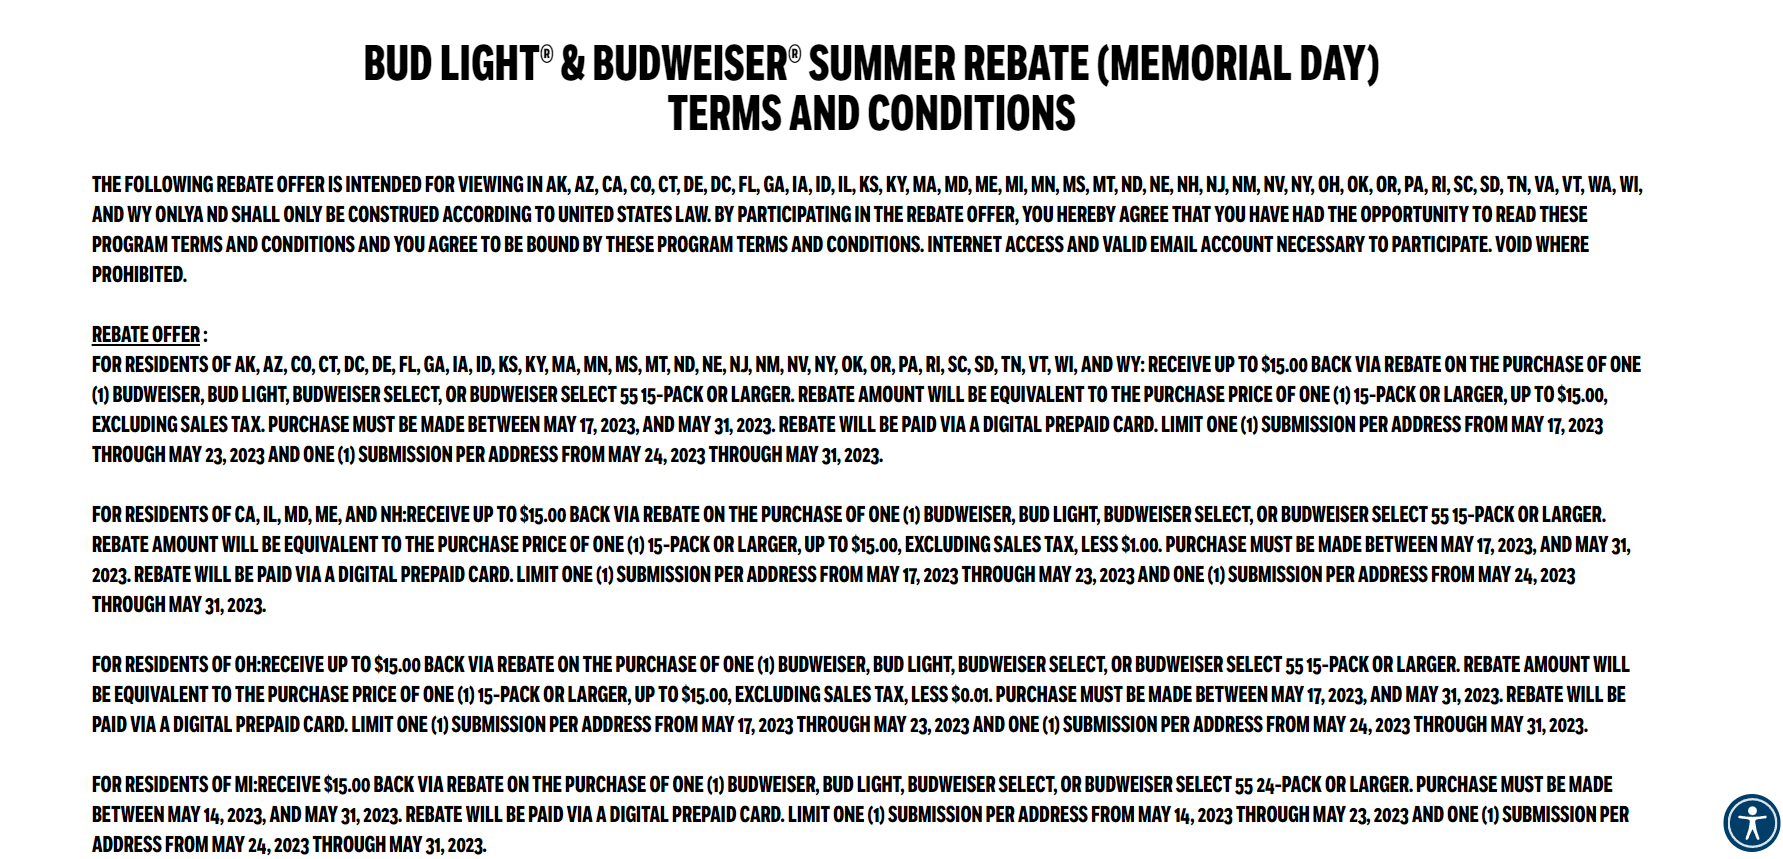 Bud Light Rebate Memorial Day